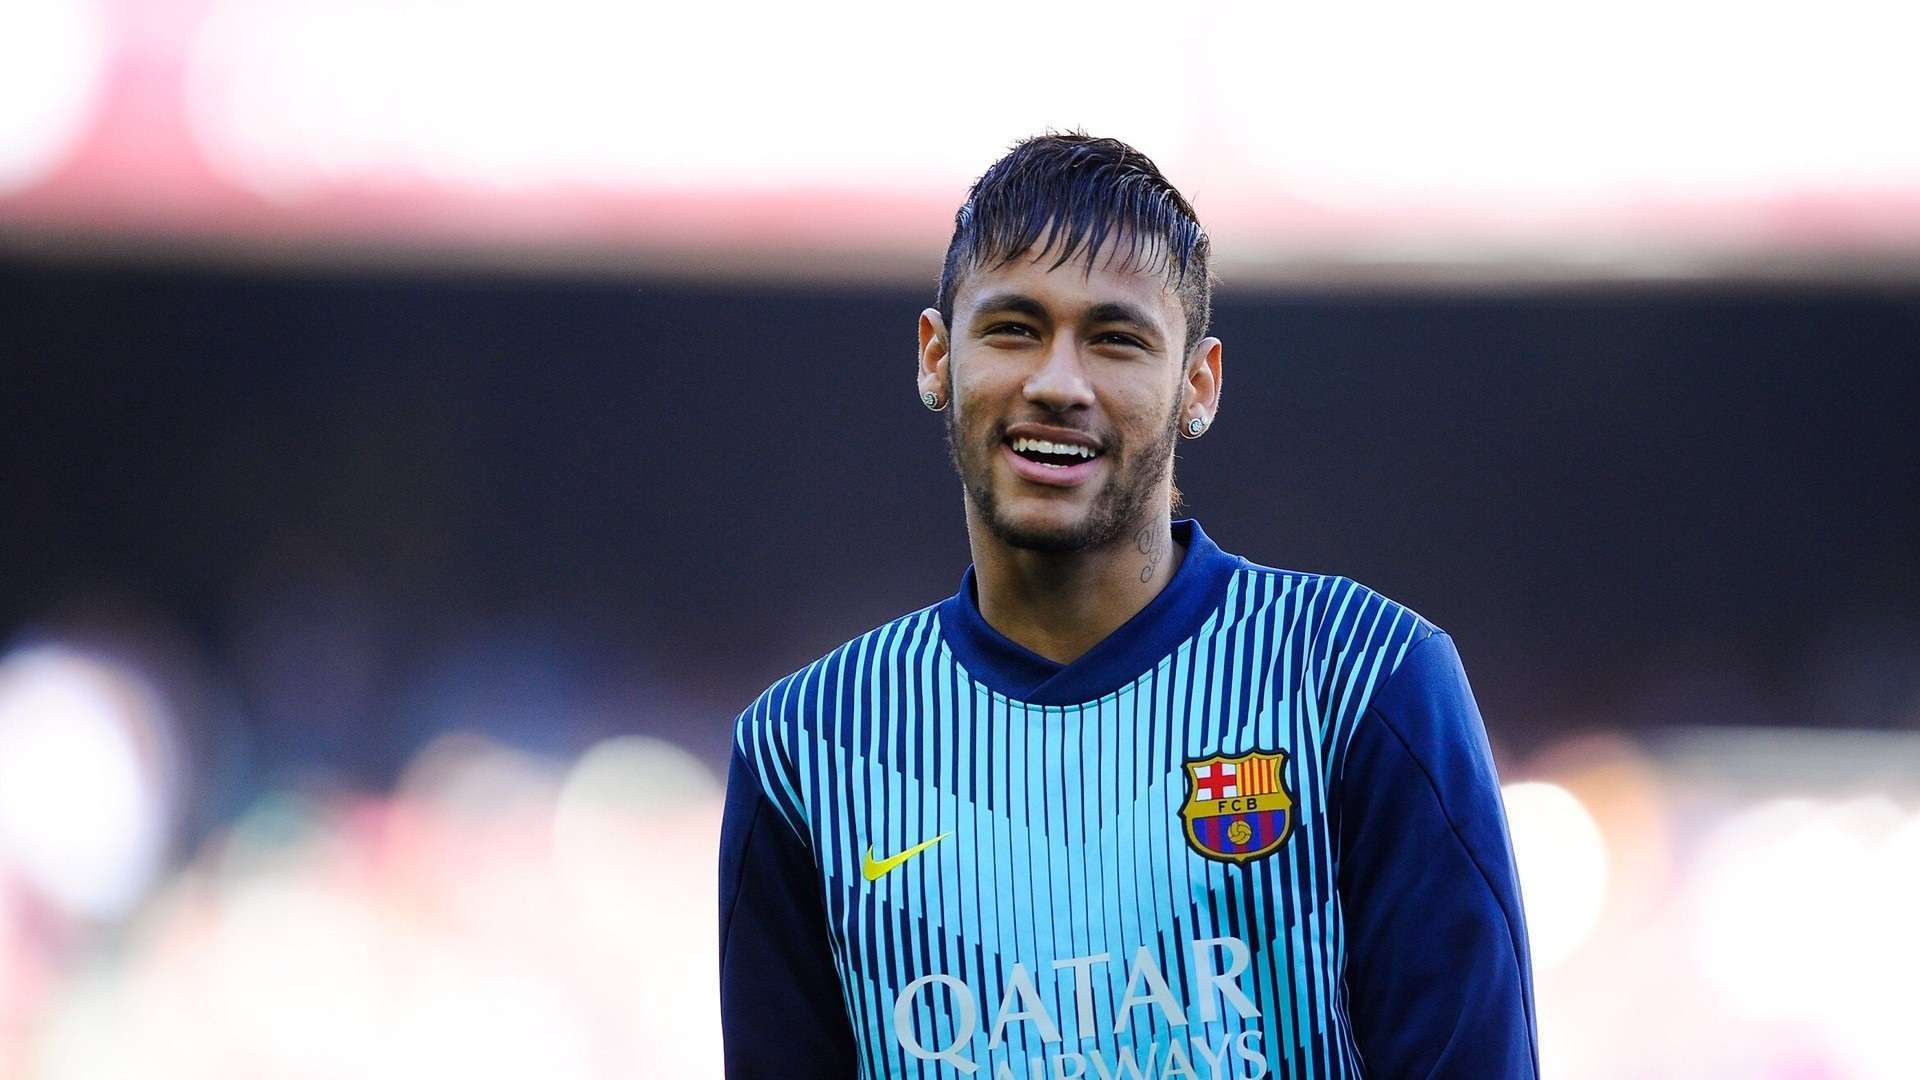 Neymar Barcelona HD Wallpaper